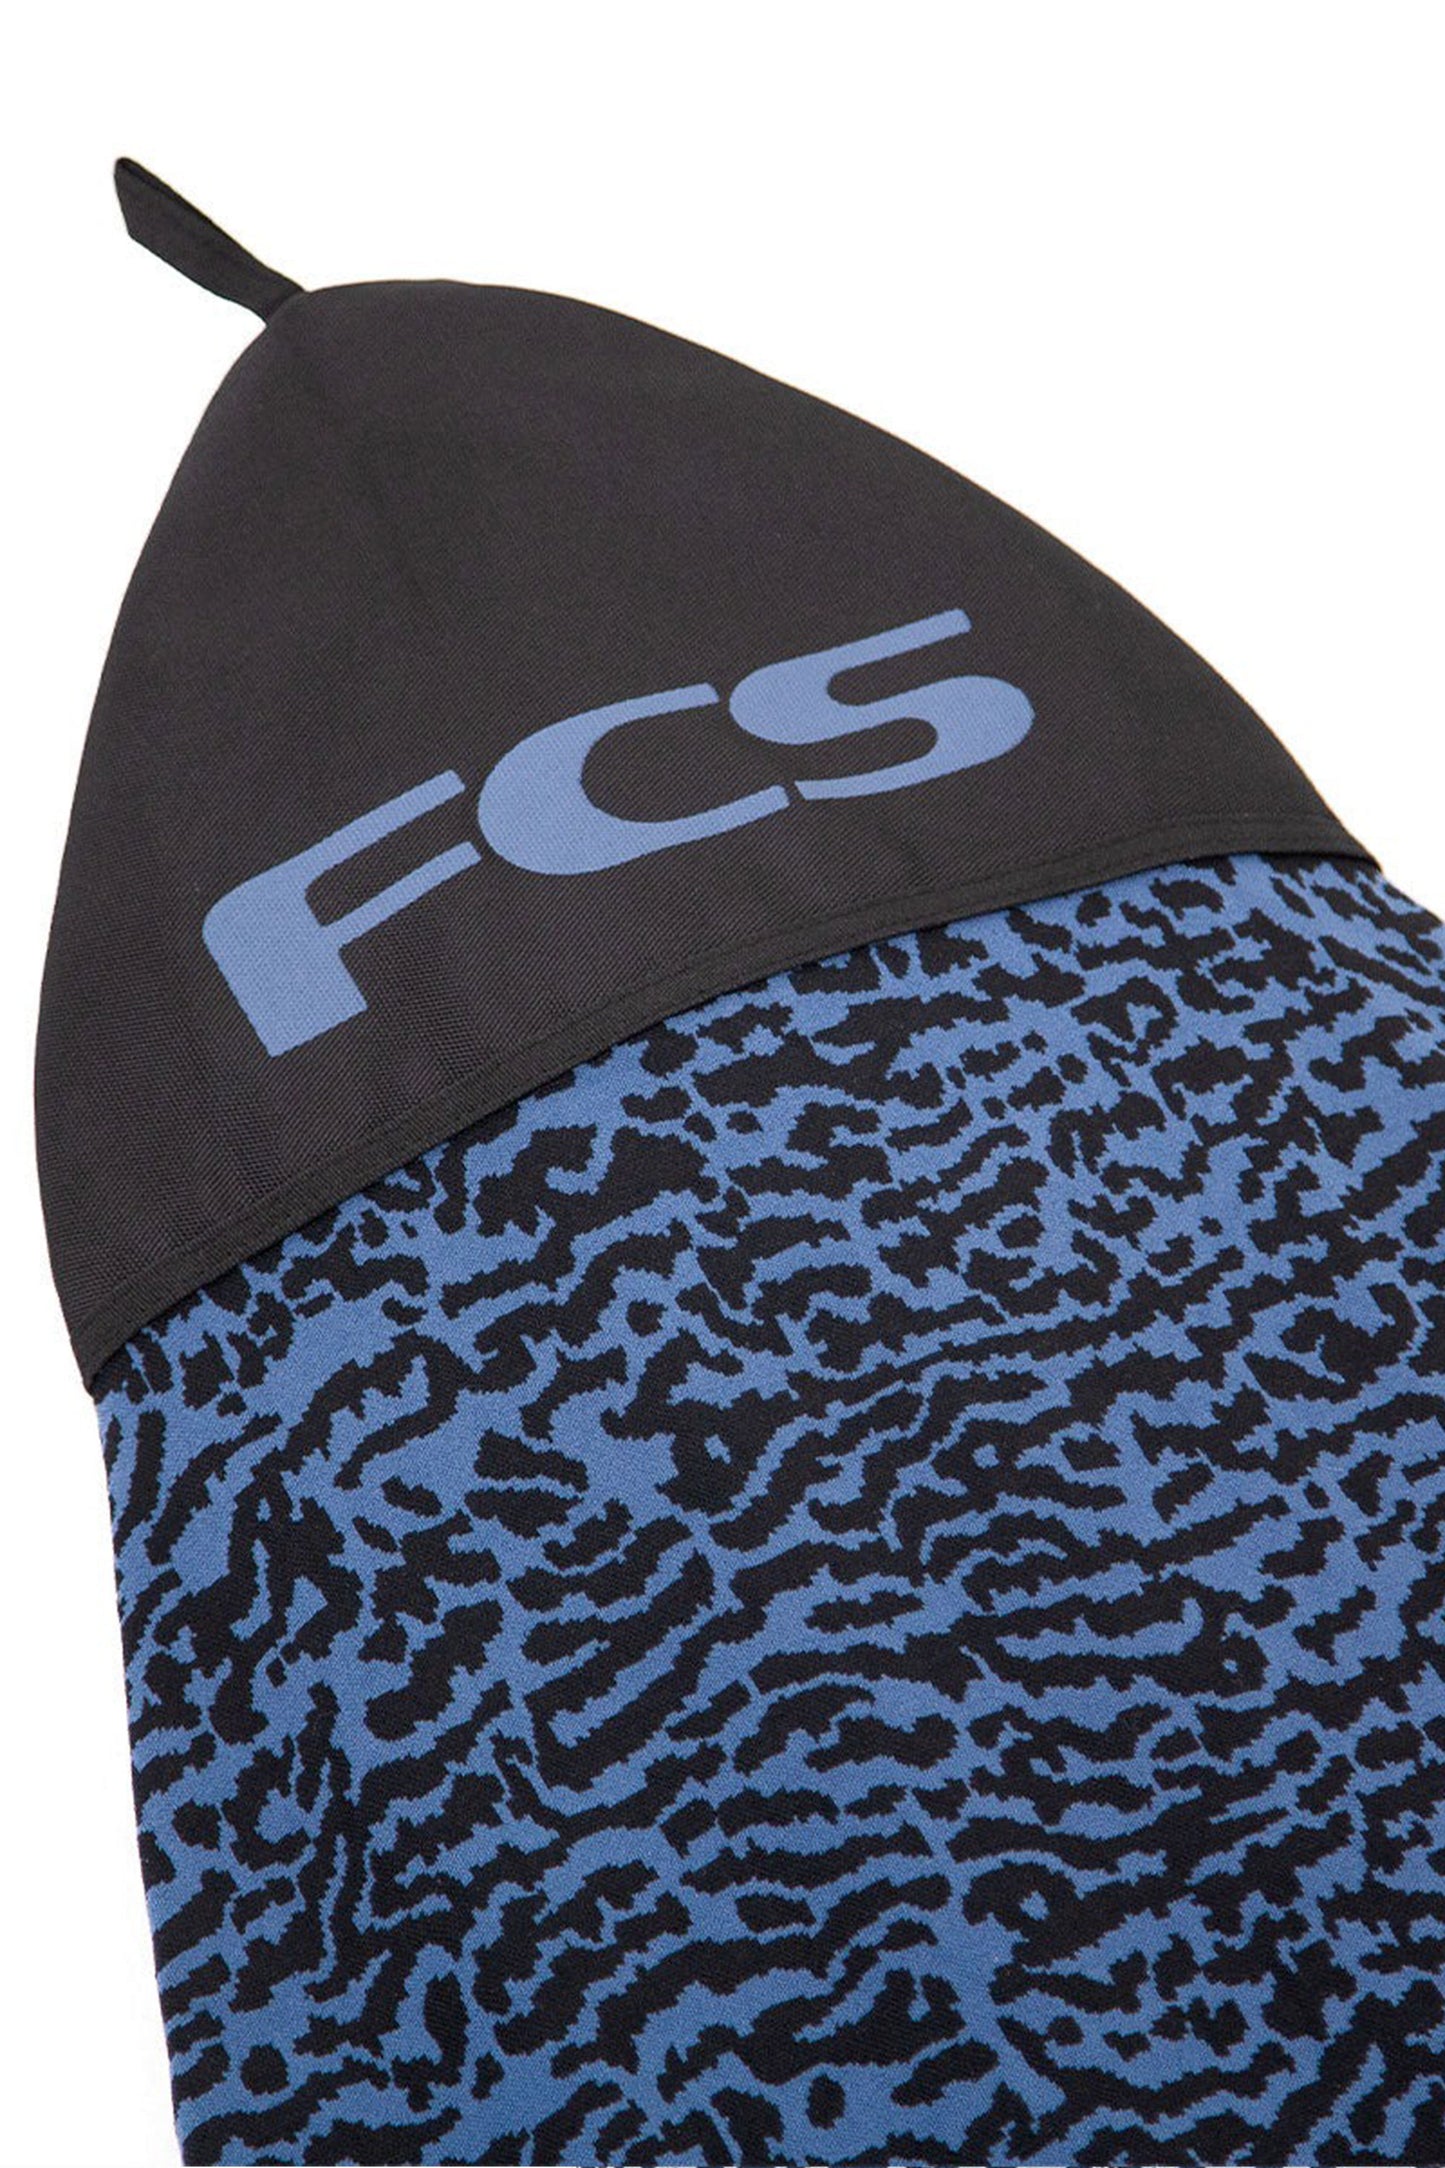 
                  
                    FCS - STRETCH FUN BOARD 6.0
                  
                